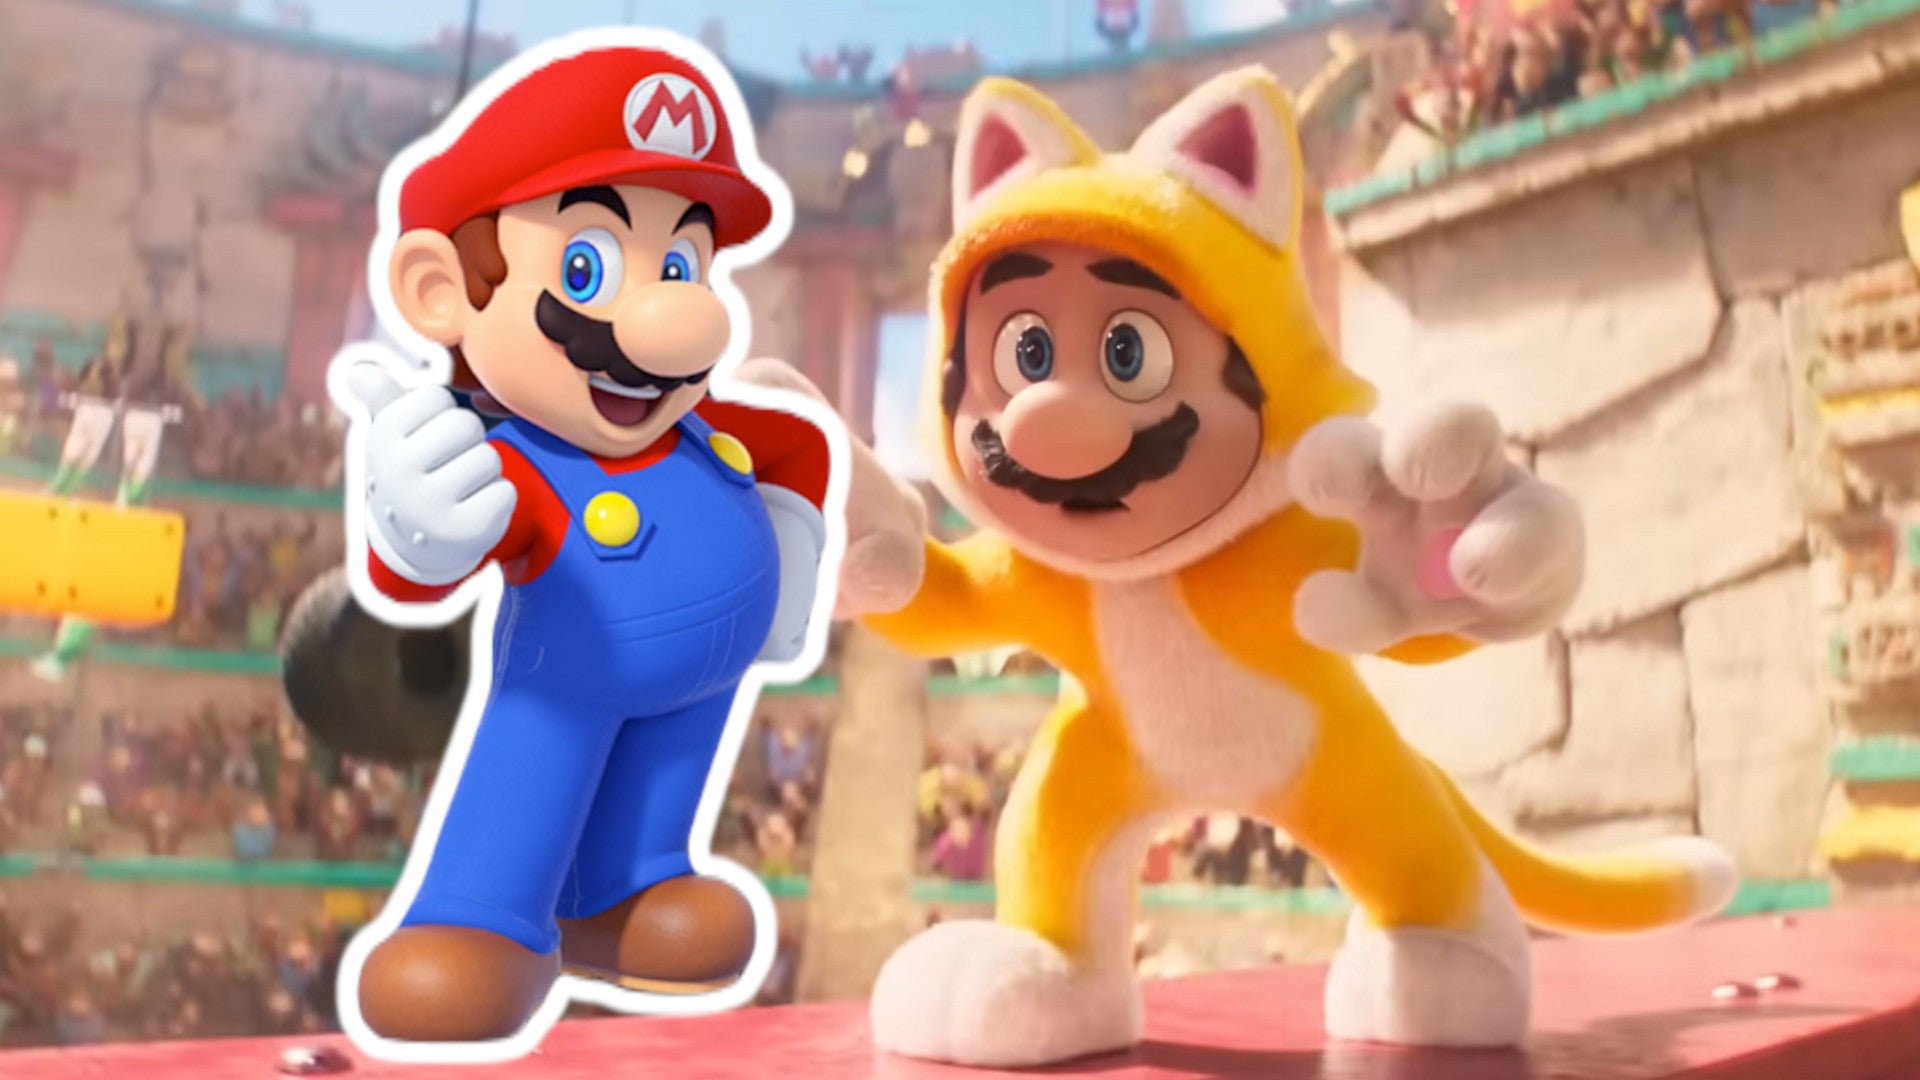 Super-Mario-Bros-Film-Neuer-Clip-zeigt-beliebtes-Mario-Outfit